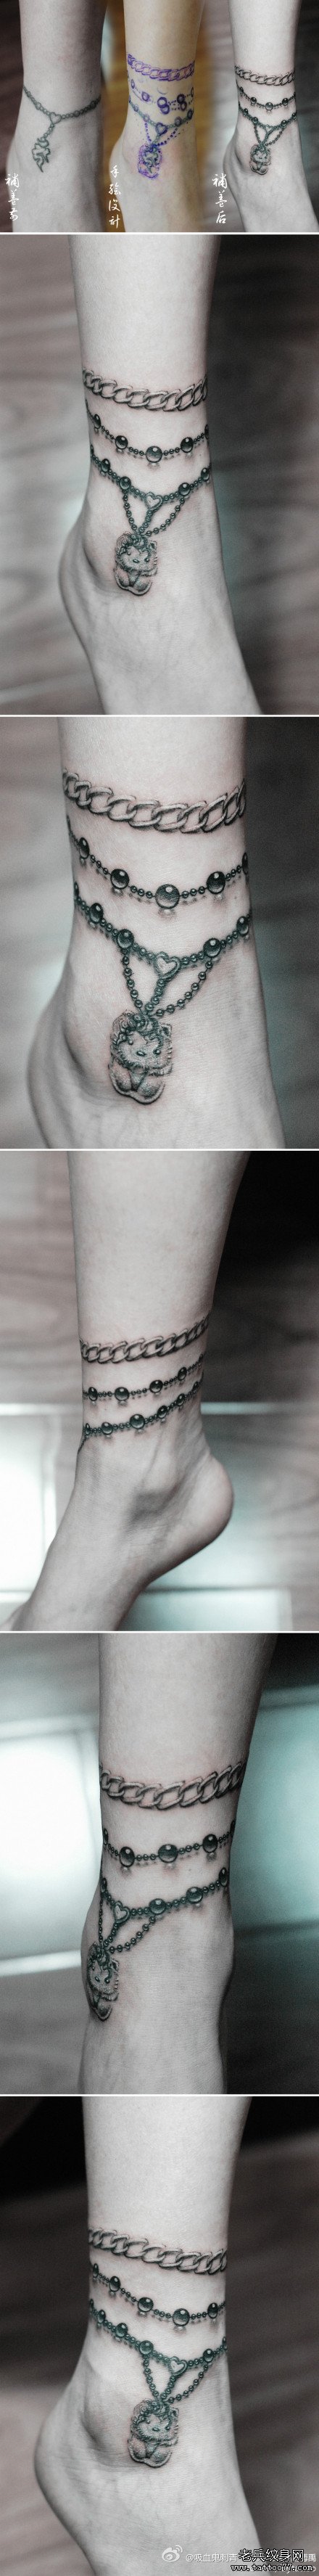 美女腿部唯美时尚的脚链纹身图案